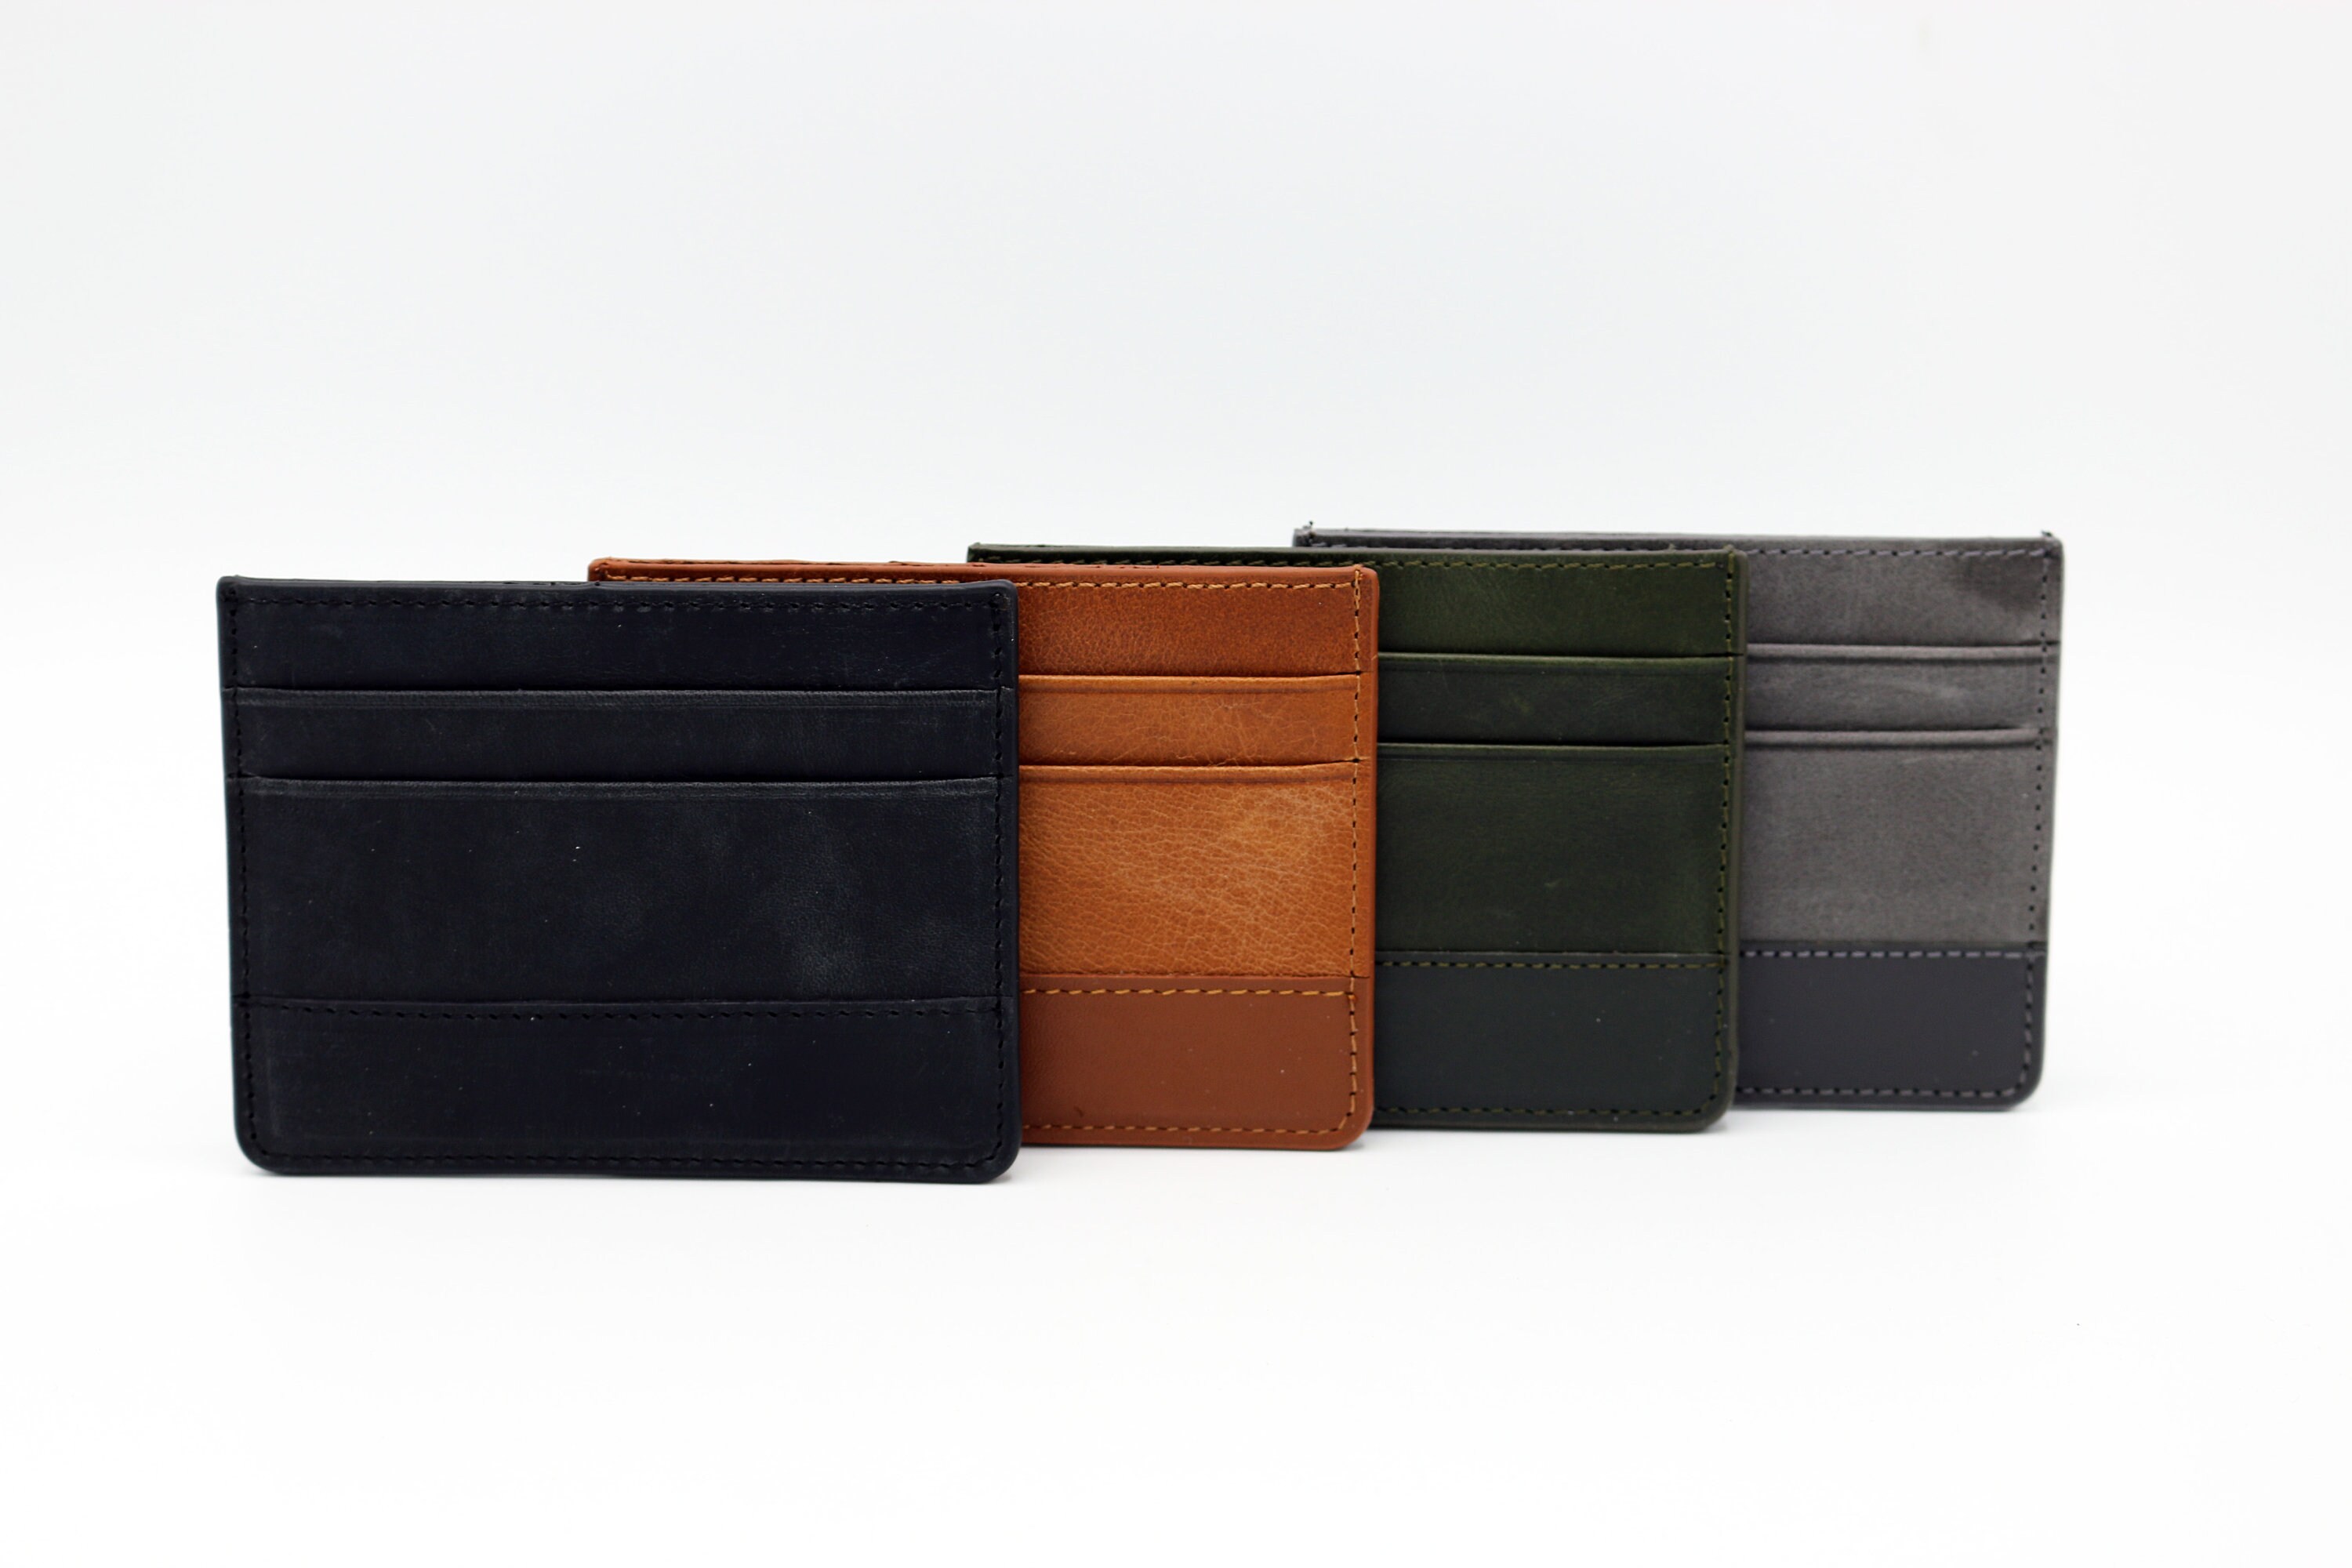 SLIM LEATHER WALLET, Men wallets, man leather wallet, minimalist